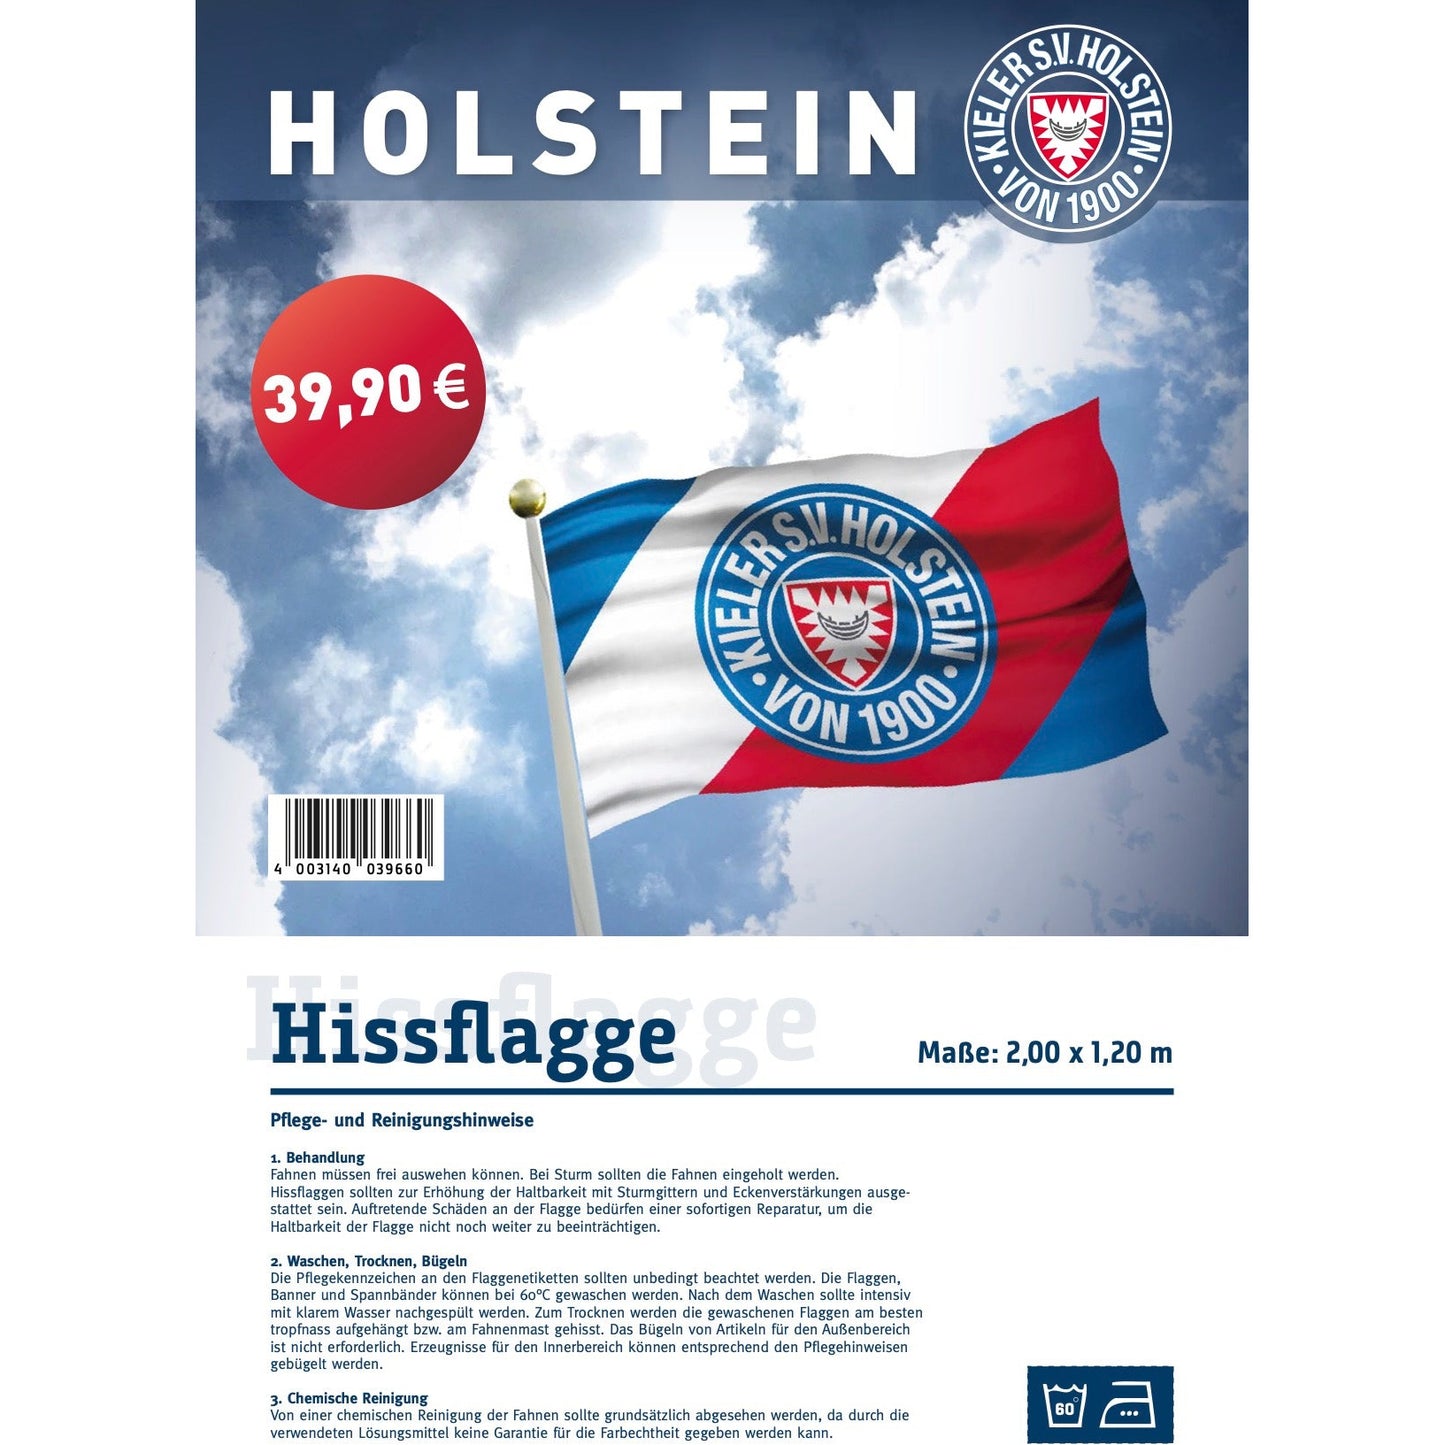 Holstein Kiel Hissflagge 2m x1,20m streifen